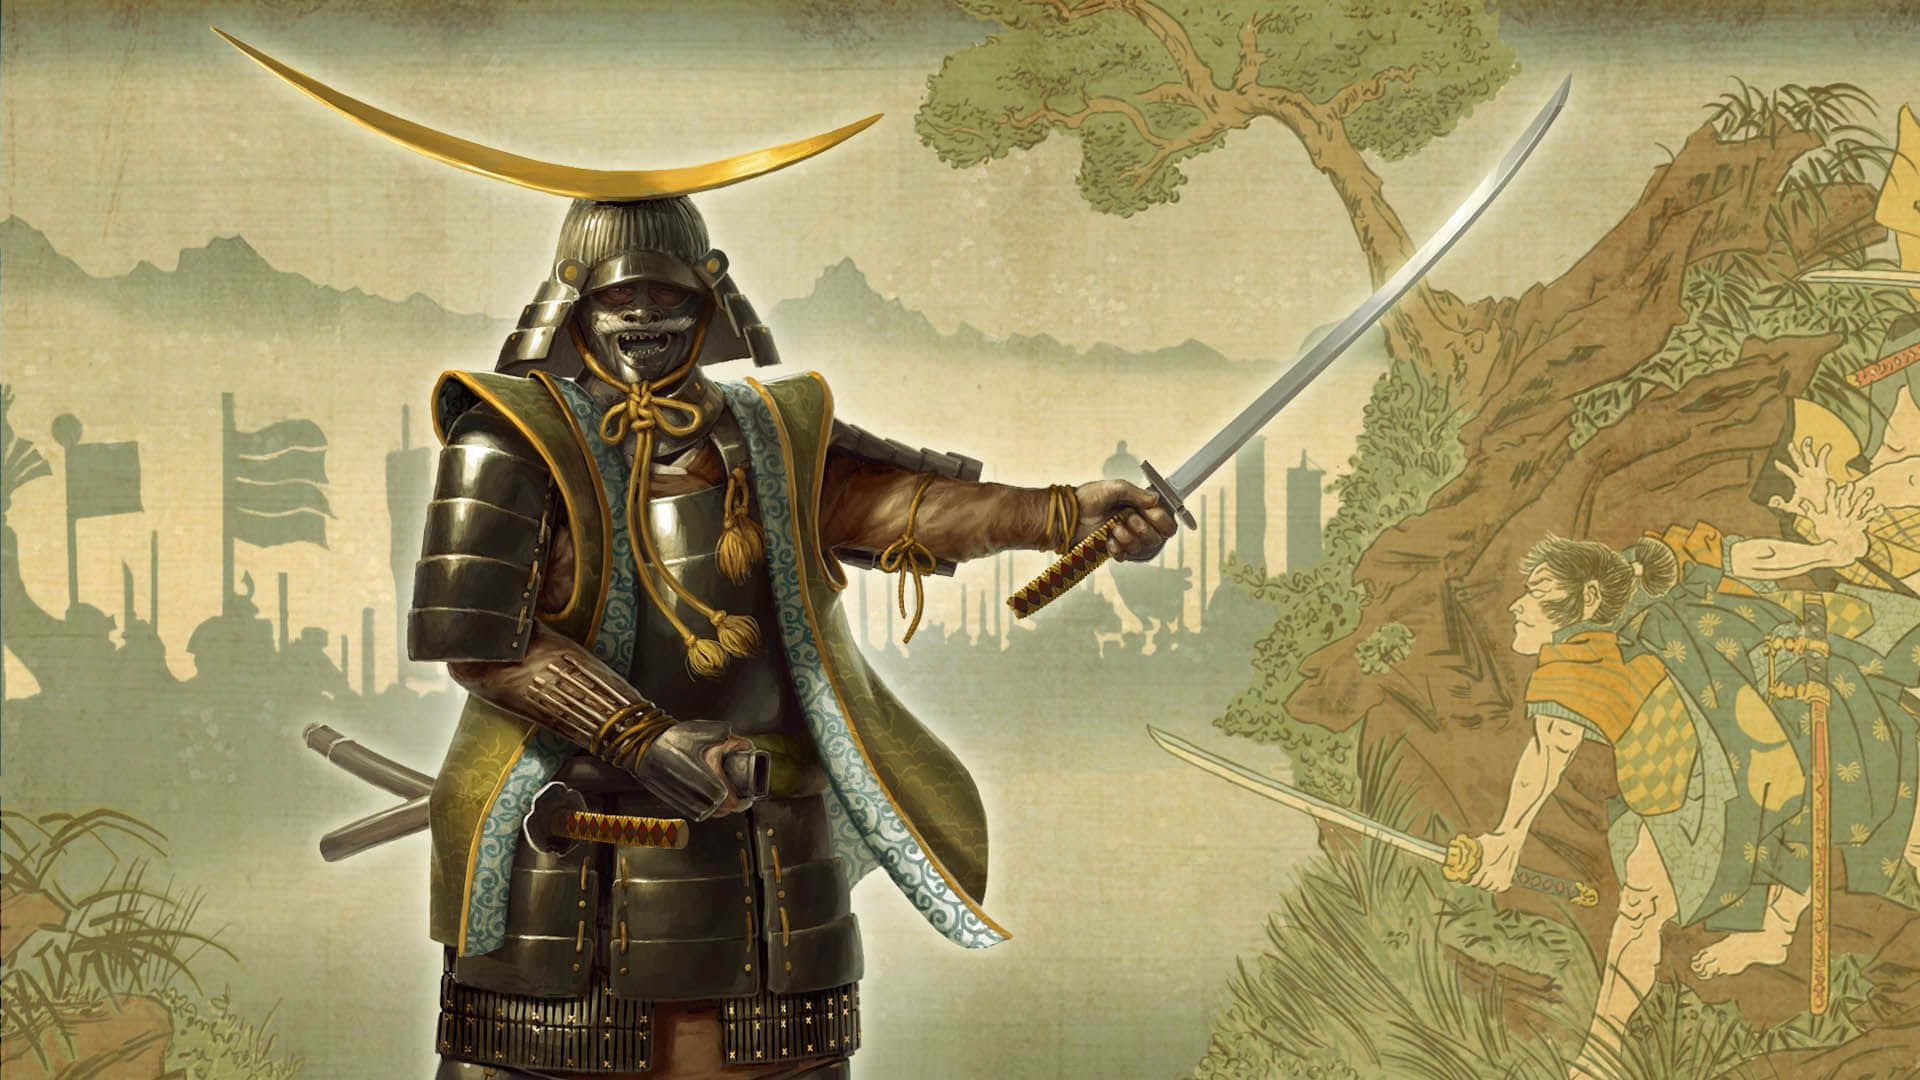 L'anticoshirasay E L'armatura Temibile Del Samurai Si Uniscono Per Creare Un Paesaggio Realistico Nel Gioco Total War Shogun 2.